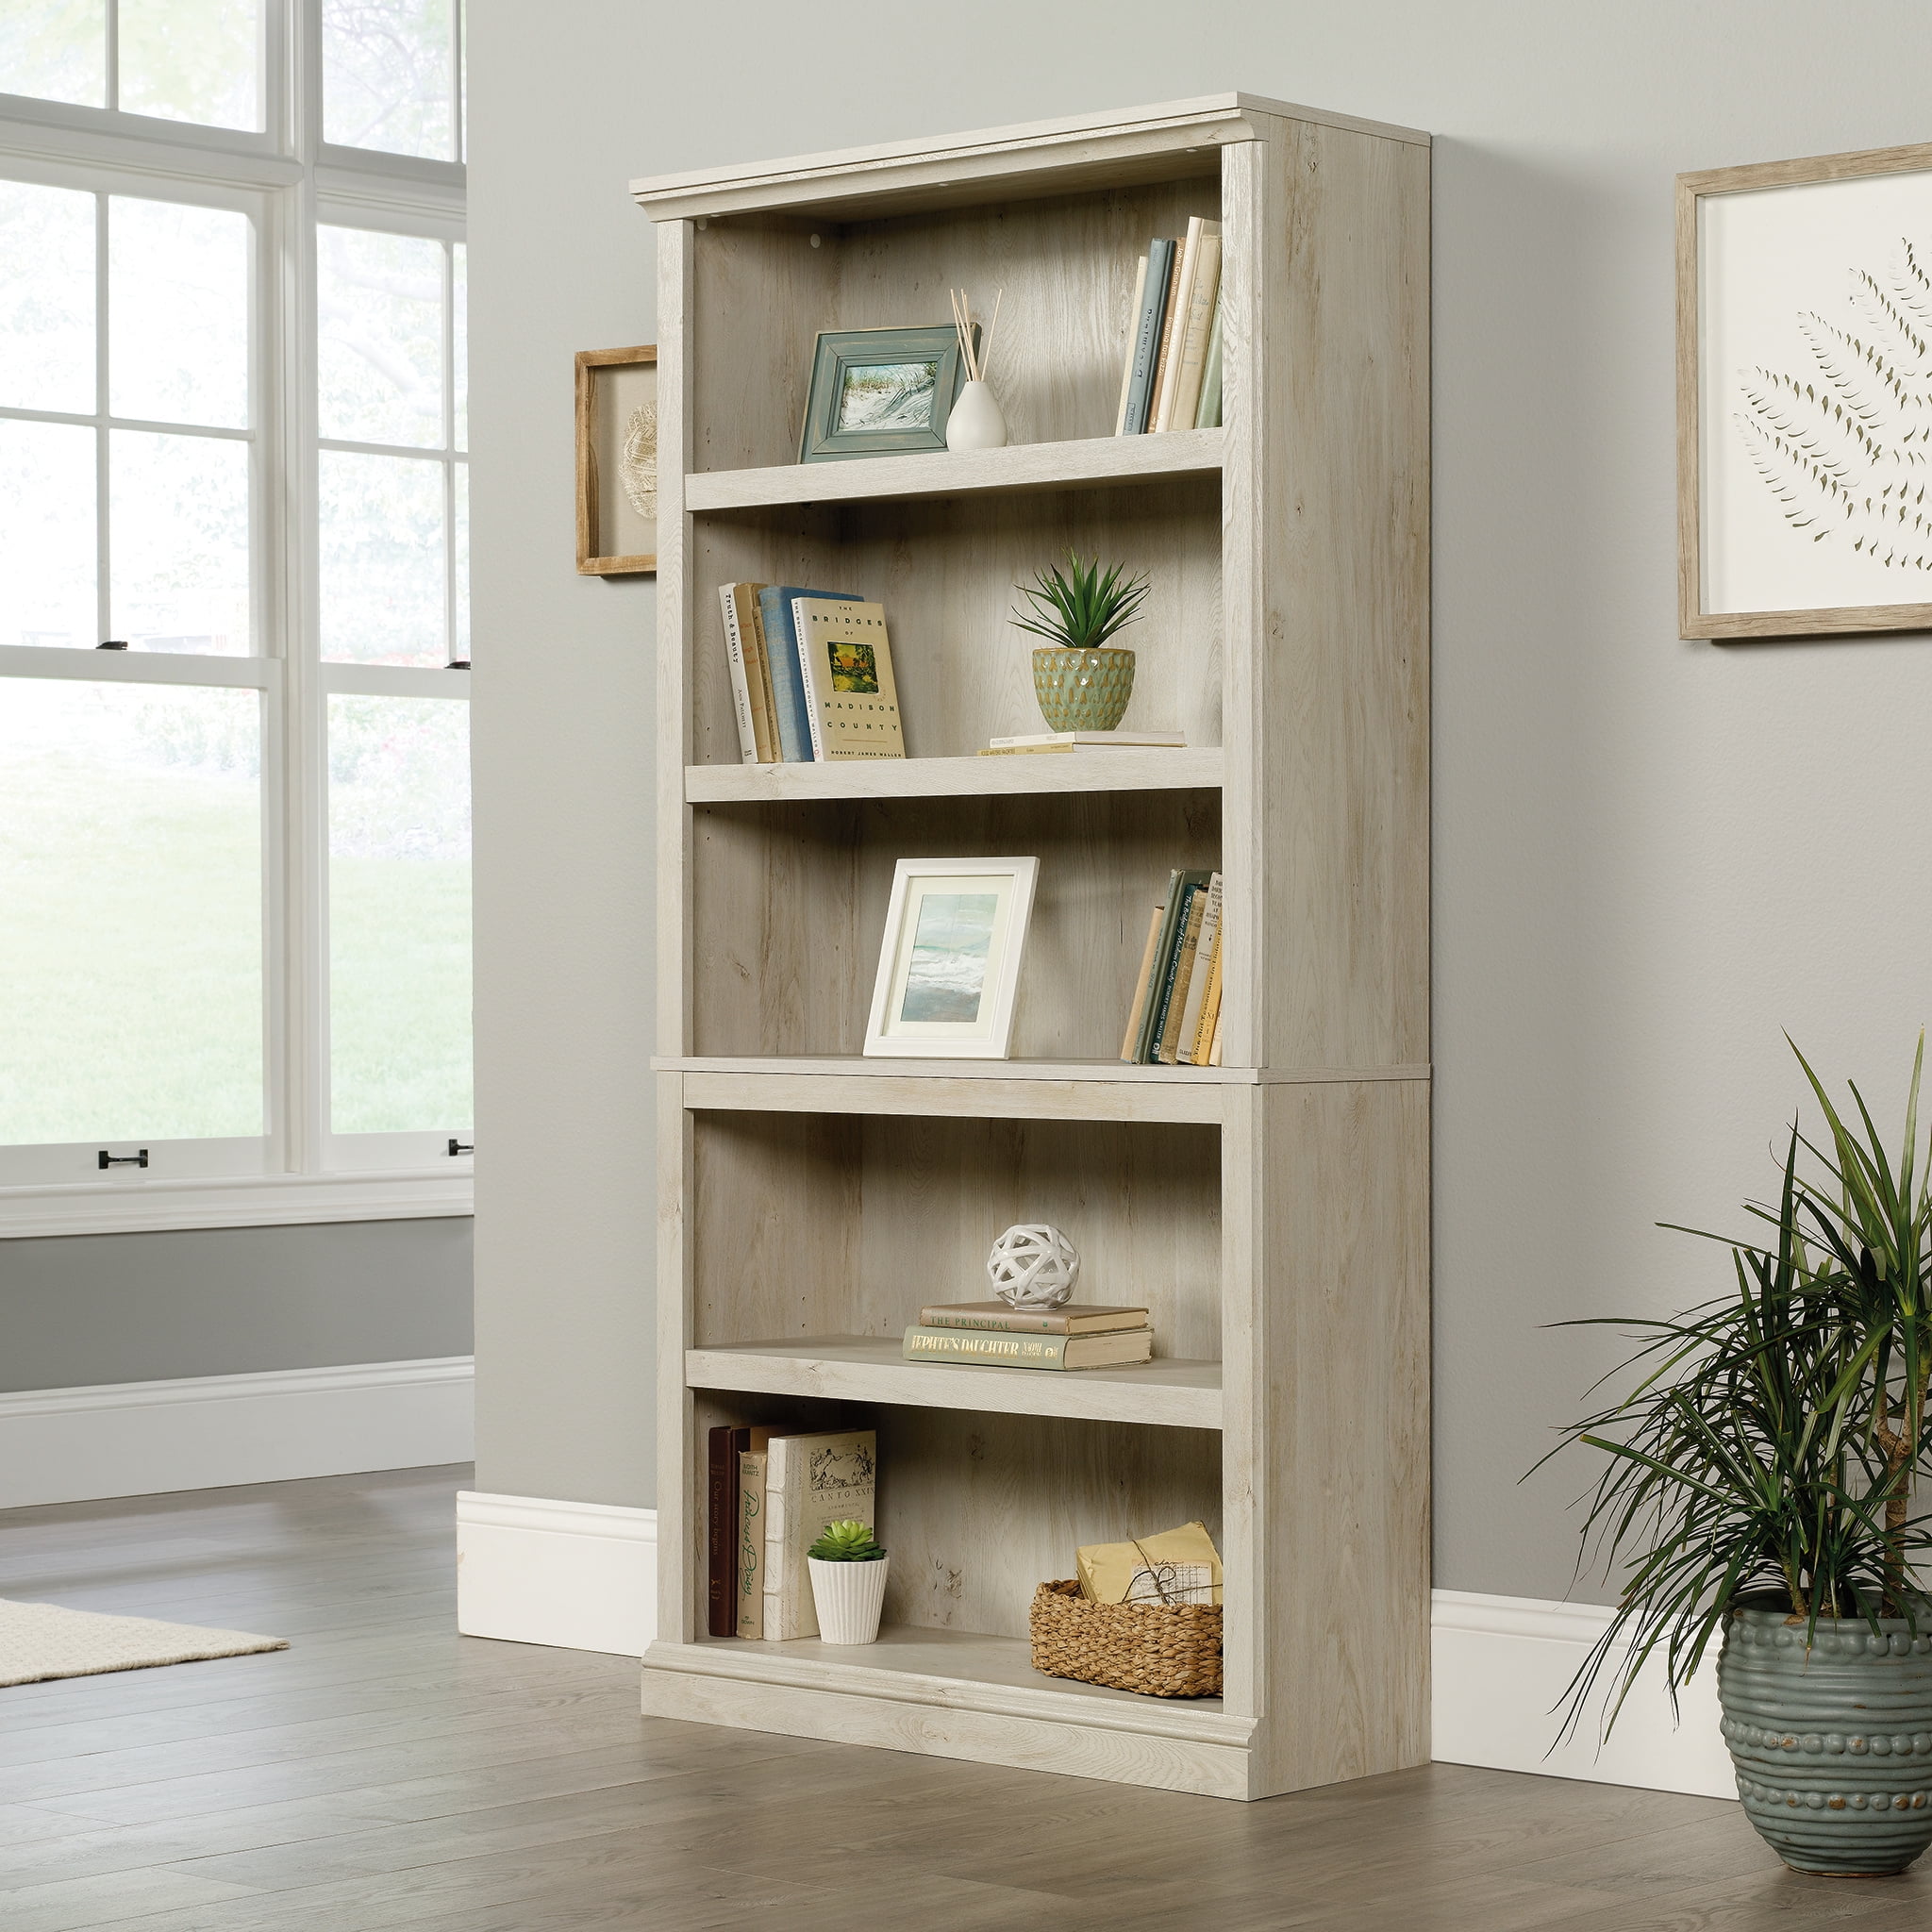 Sauder Select 5 Shelf Bookcase Chalked Chestnut Finish